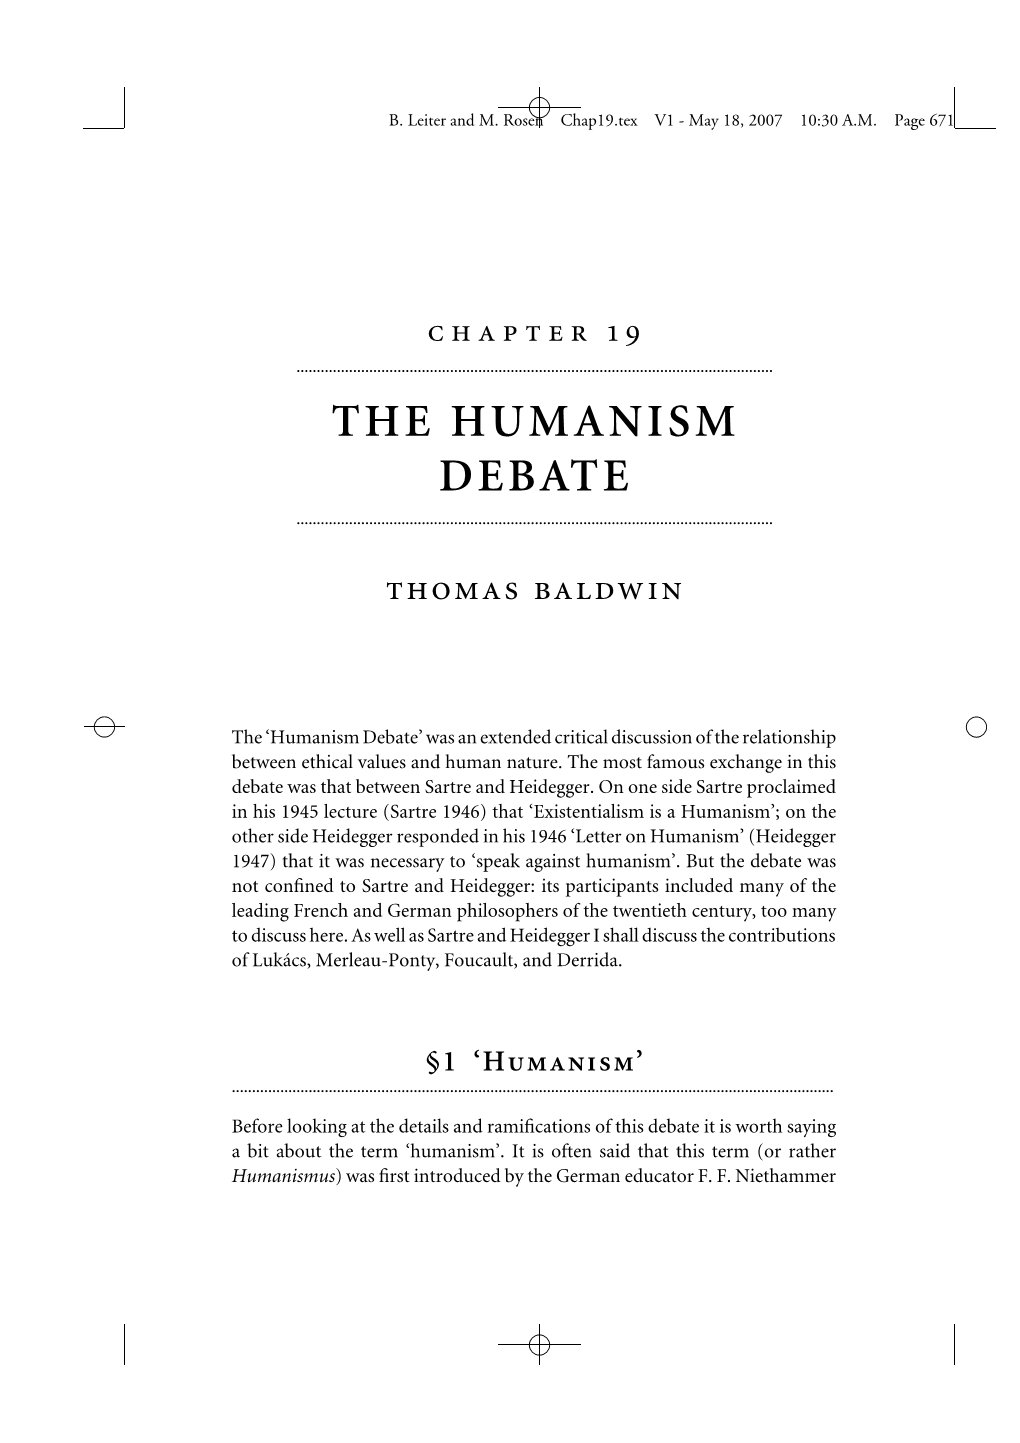 The Humanism Debate